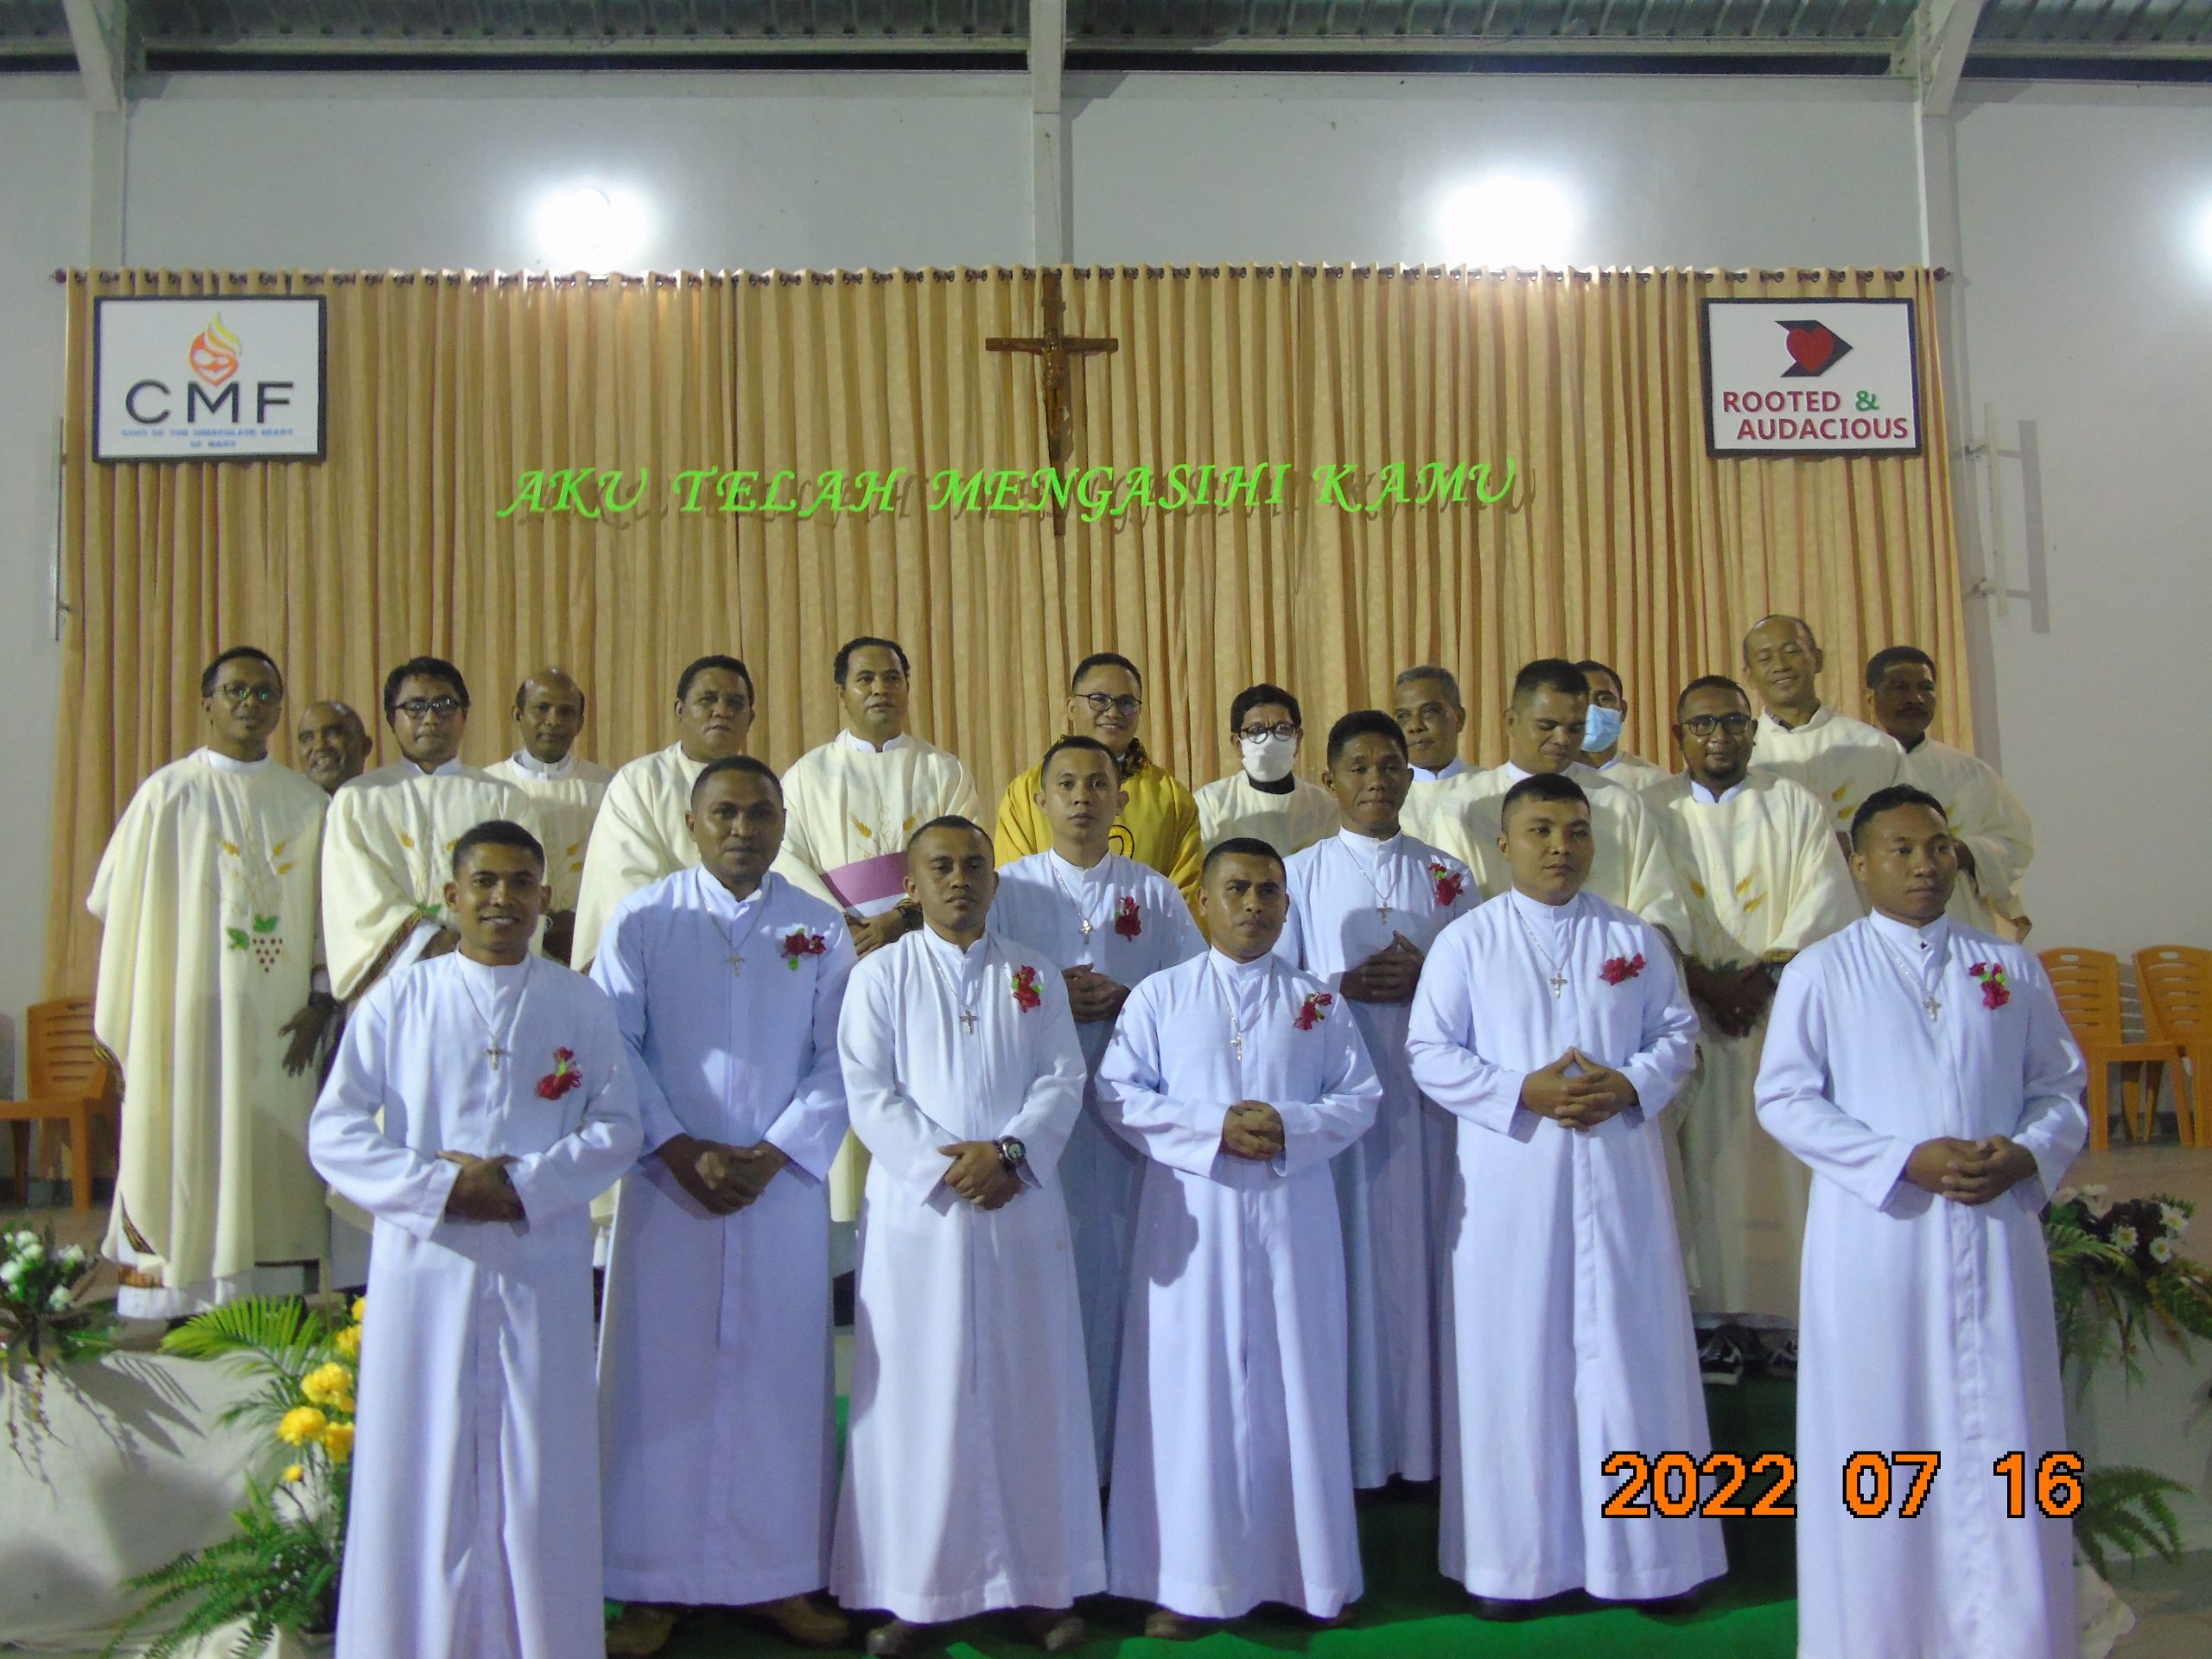 Più giovani clarettiani dell’Indonesia-Timor Leste promettono i voti evangelici